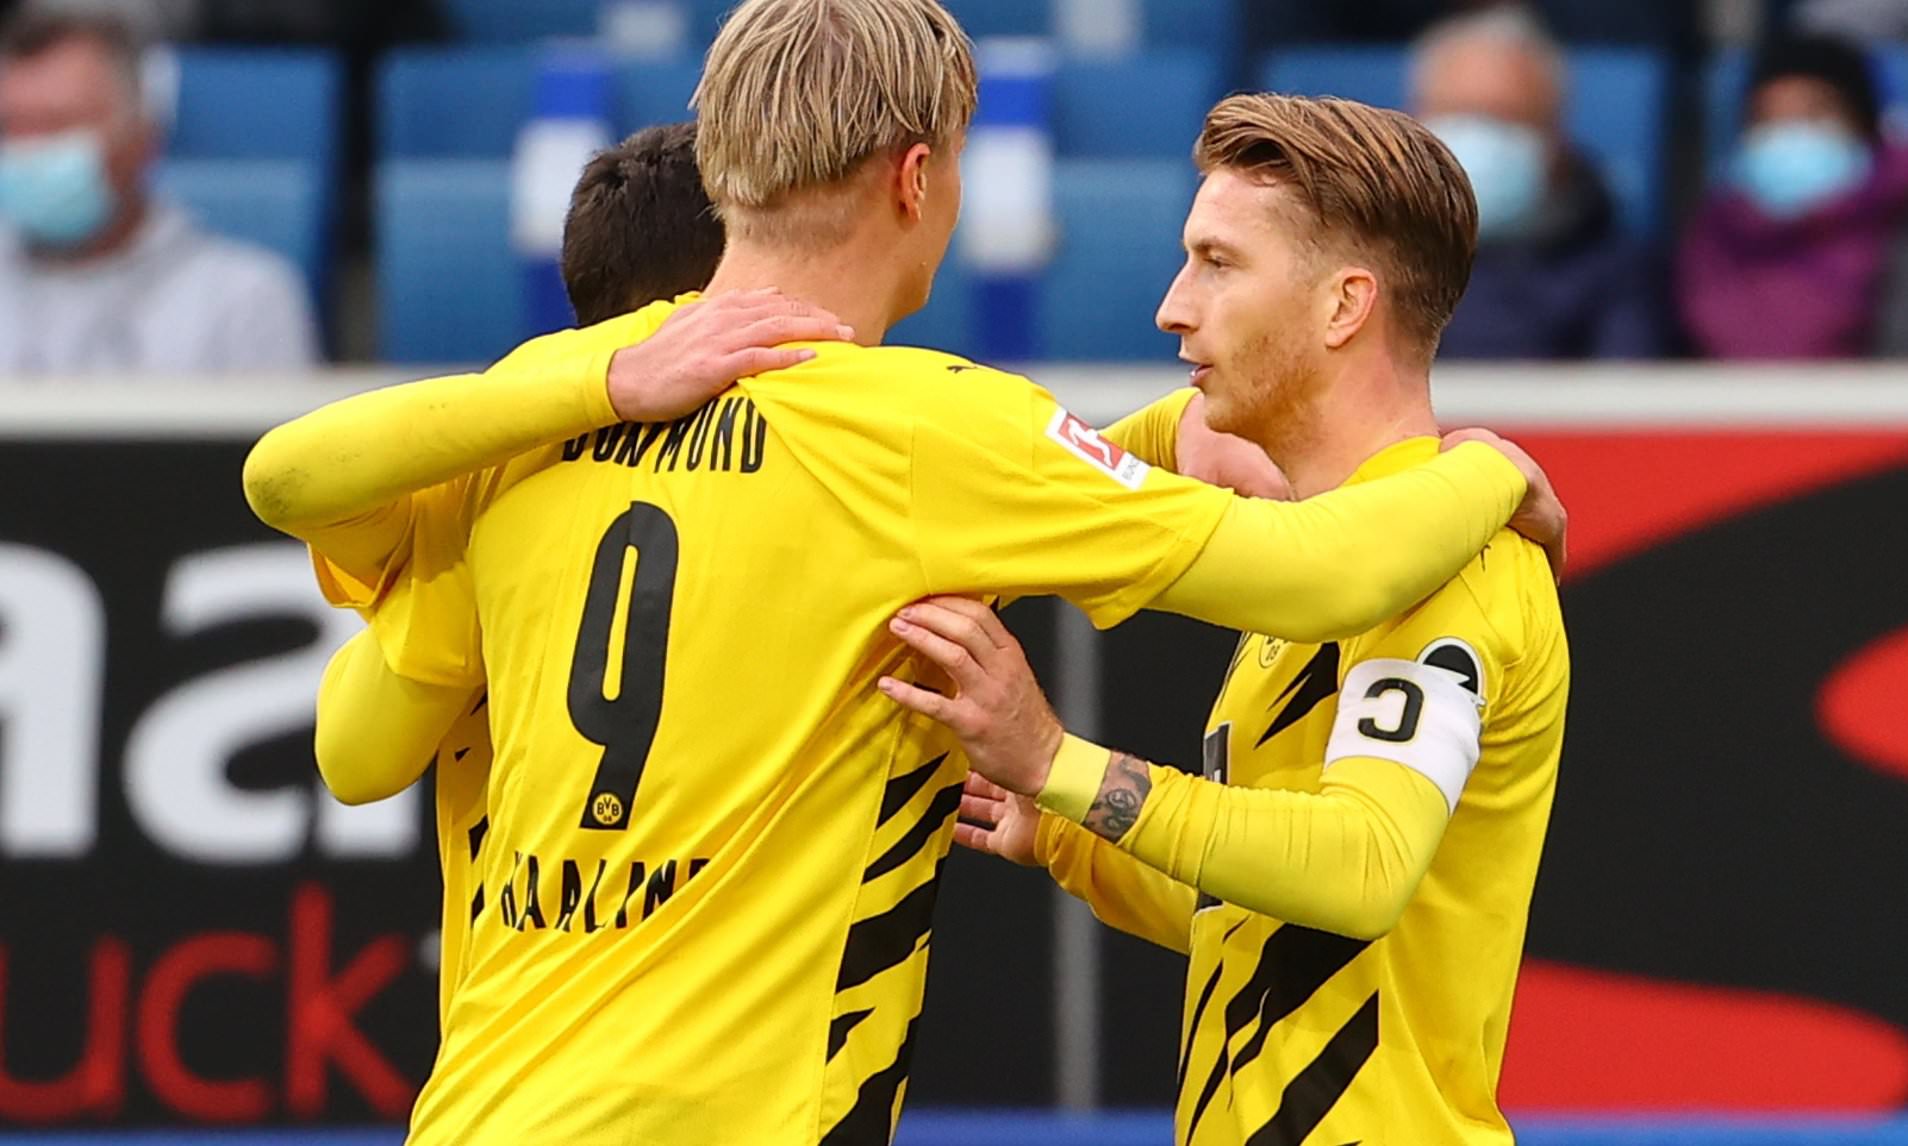 Nhận định kèo bóng đá: Borussia Dortmund vs Arminia Bielefeld – 21h30 27/02/2021